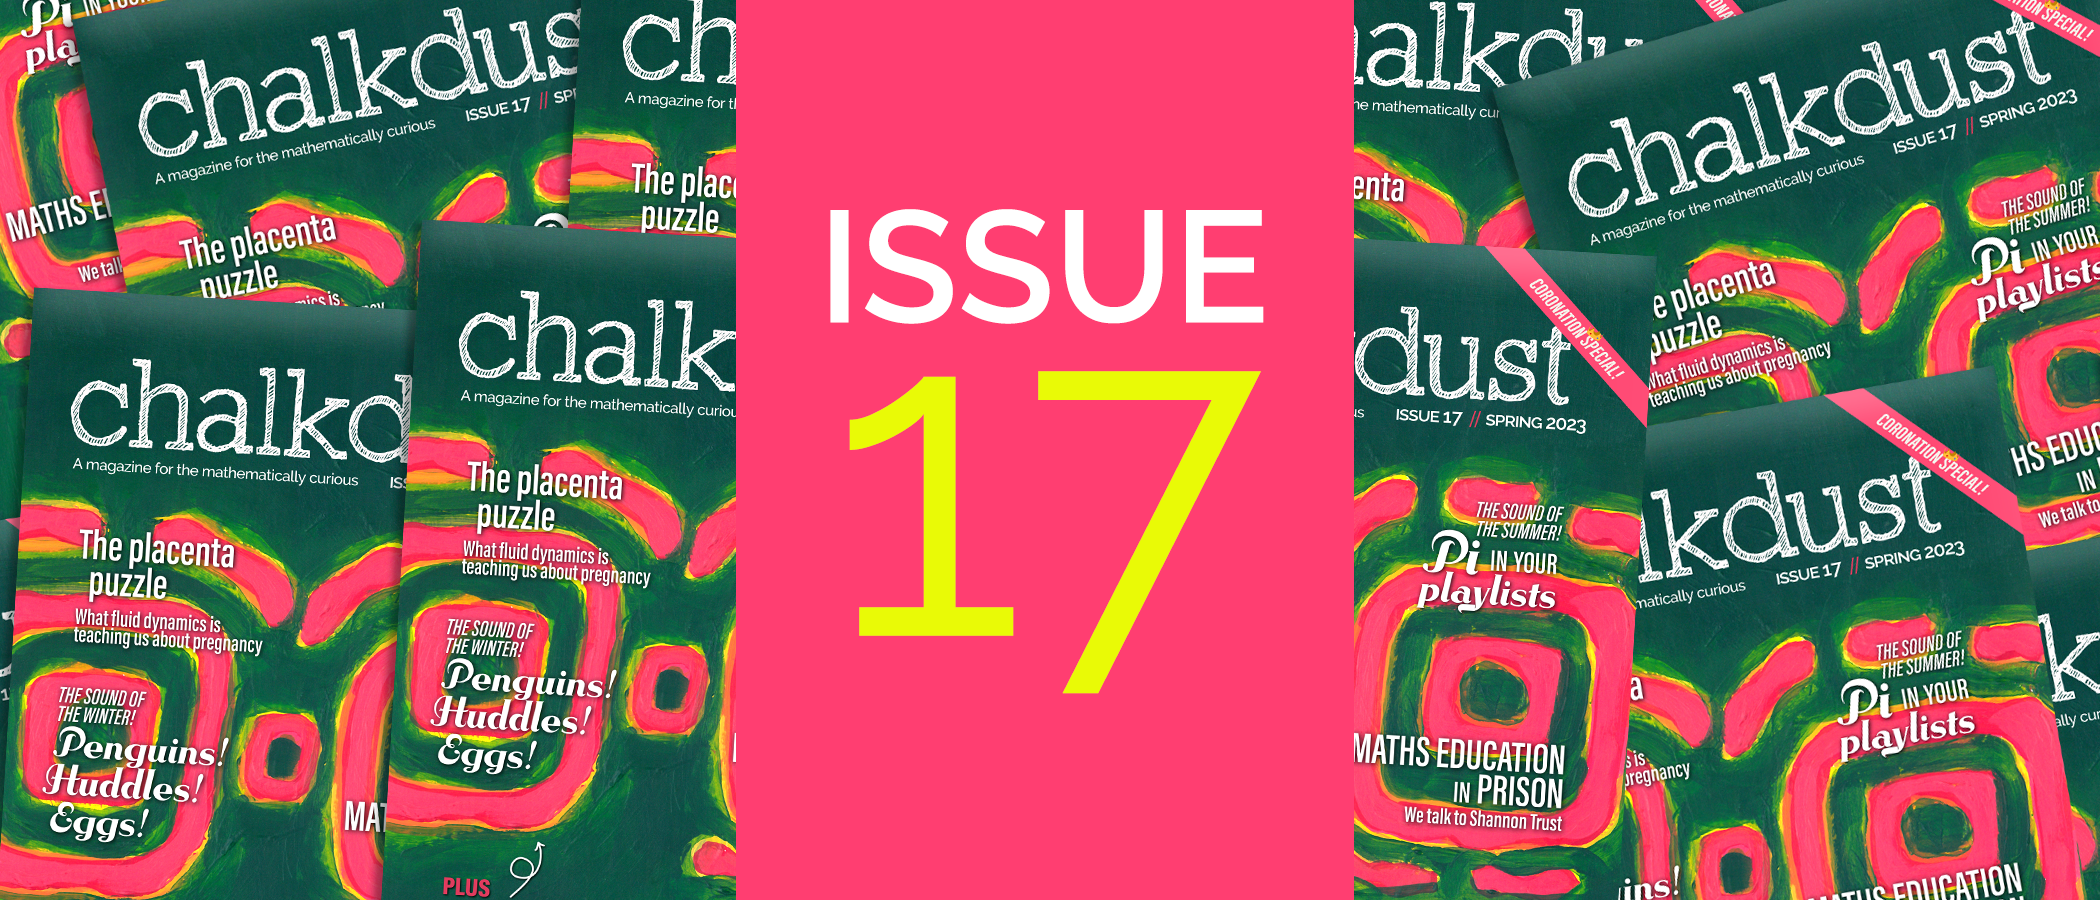 Chalkdust issue 17